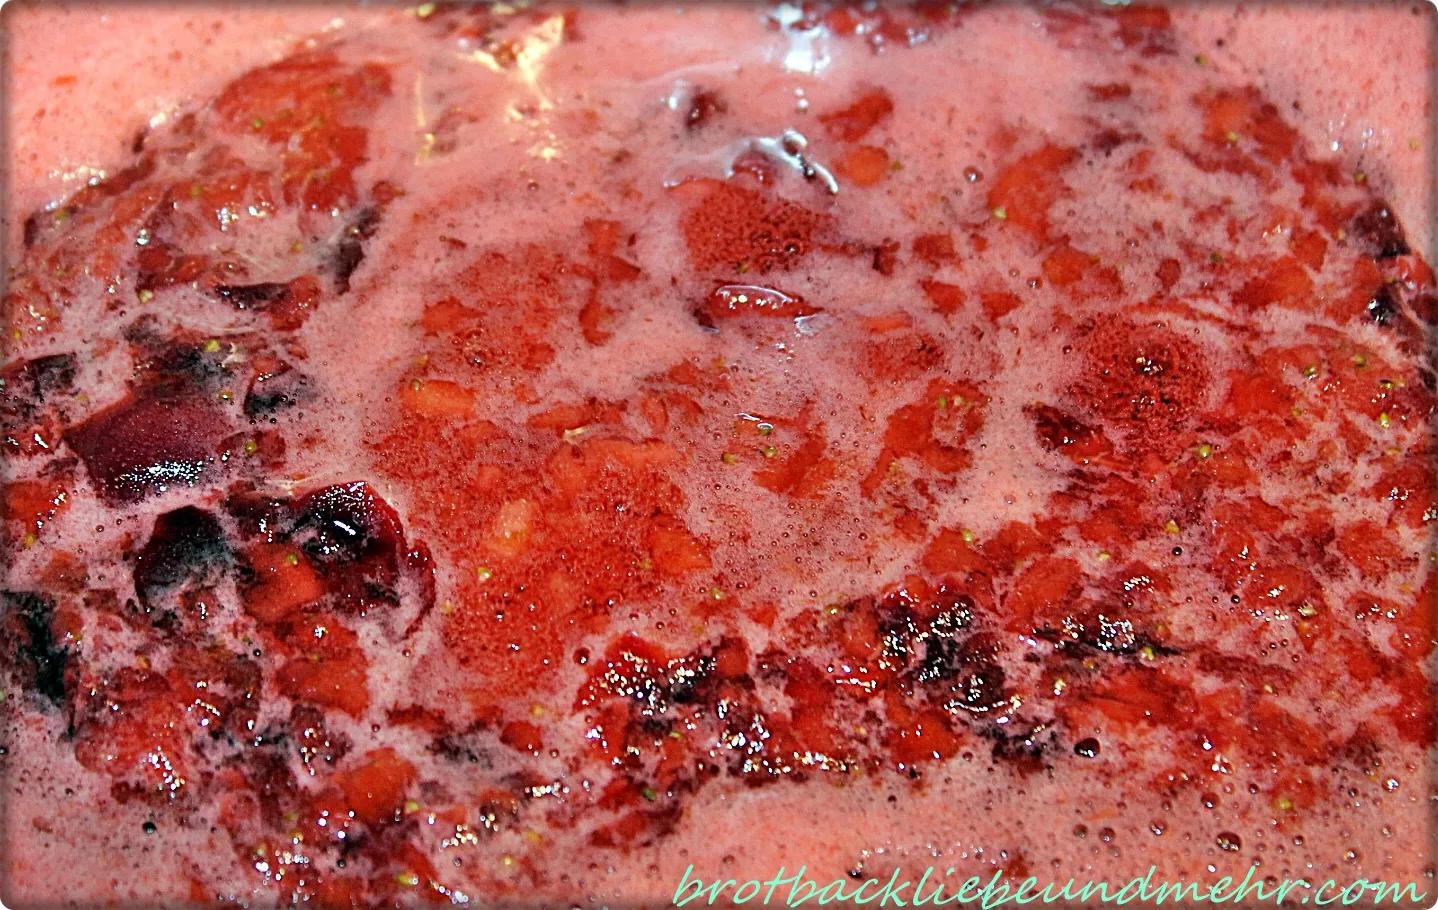 Erdbeer-Kirsch-Marmelade - Brotbackliebe ... und mehr